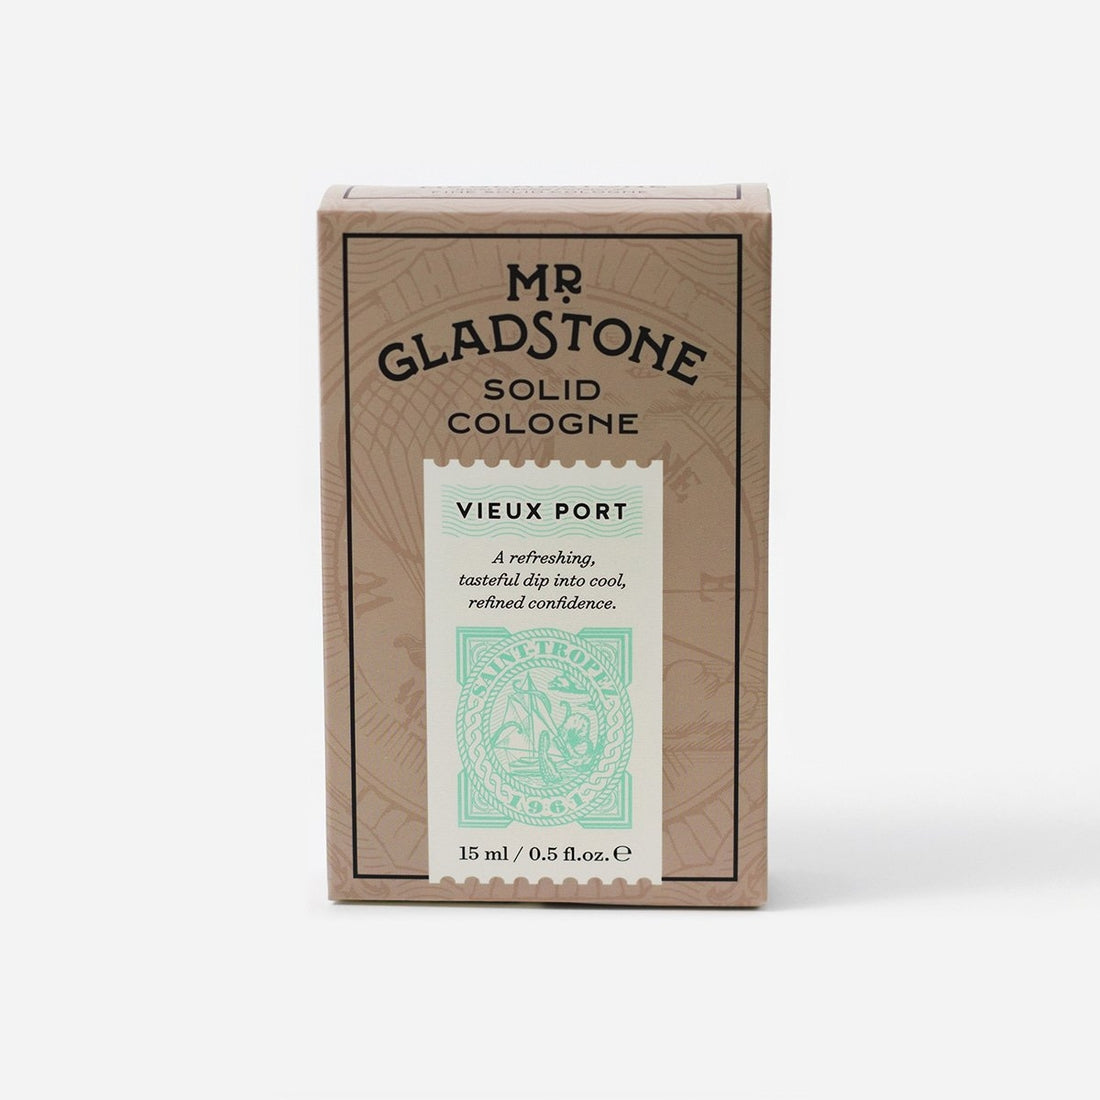 Mr. Gladstone Vieux Port Cologne